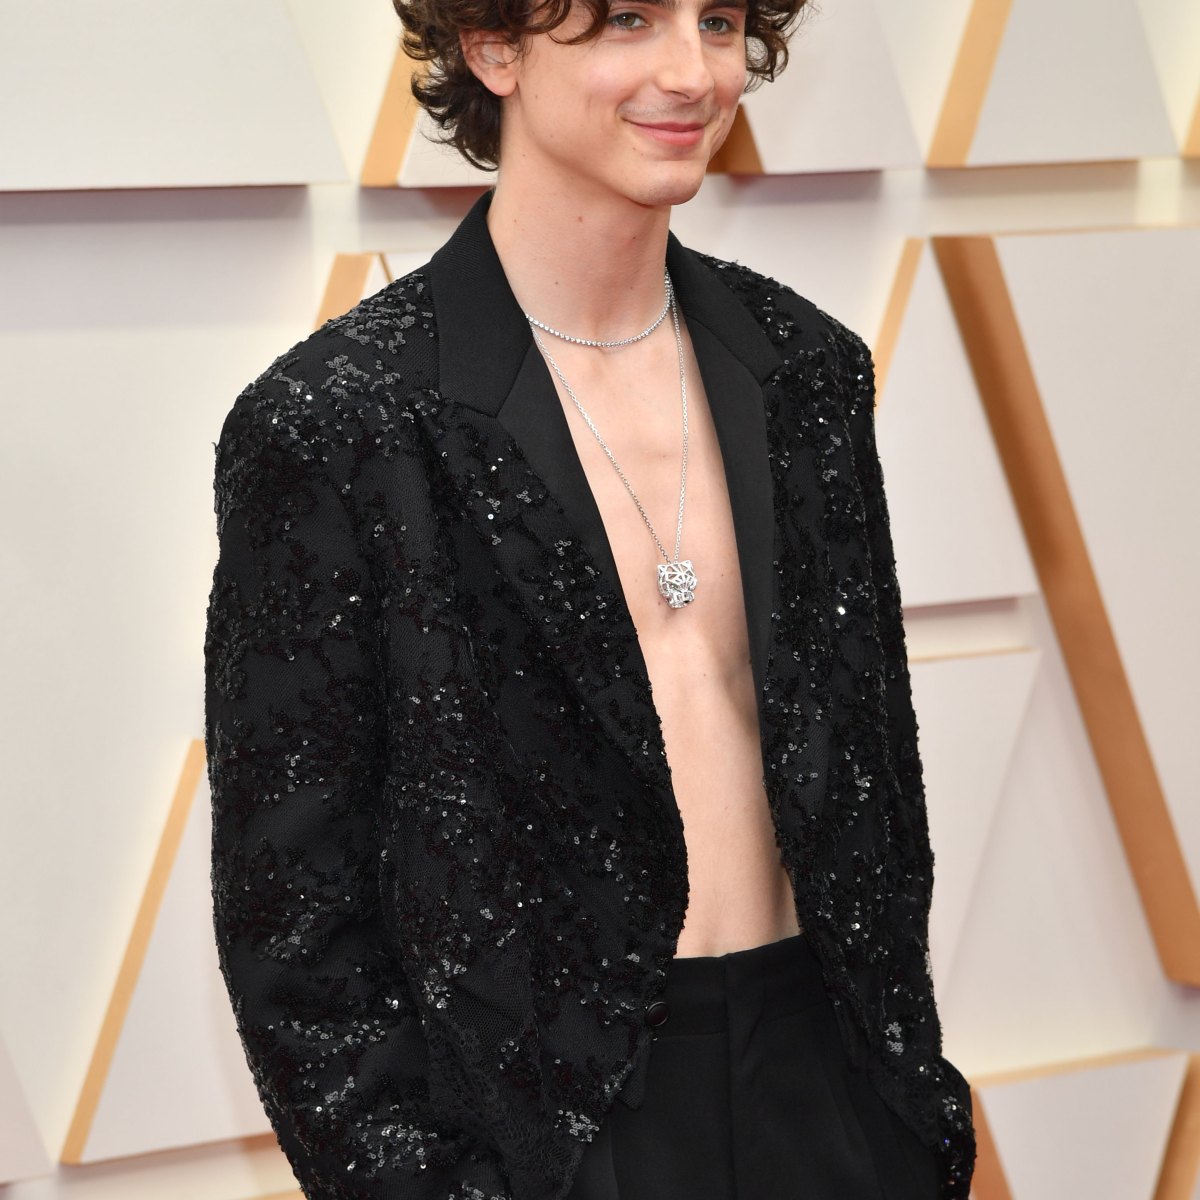 Timothée Chalamet Goes Shirtless & Gender Fluid For 2022 Oscars - IMDb